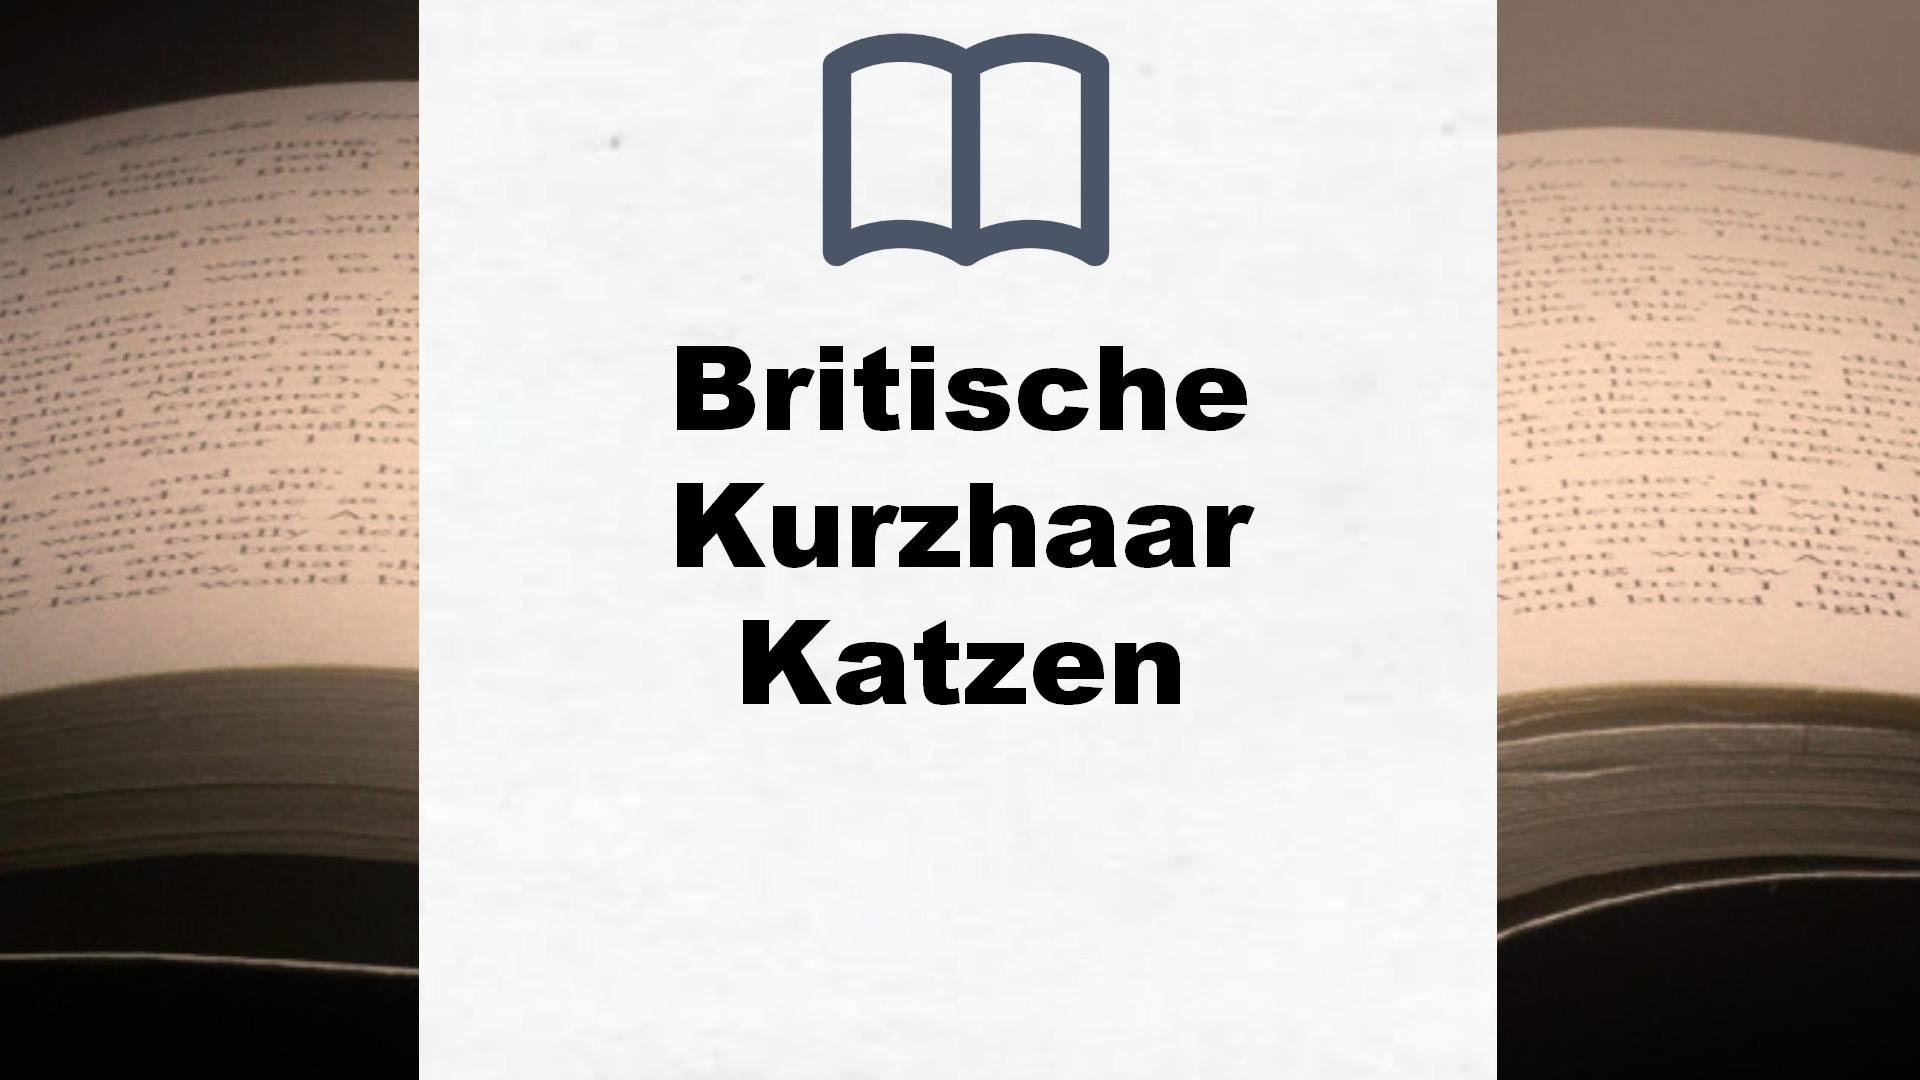 Bücher über Britische Kurzhaar Katzen